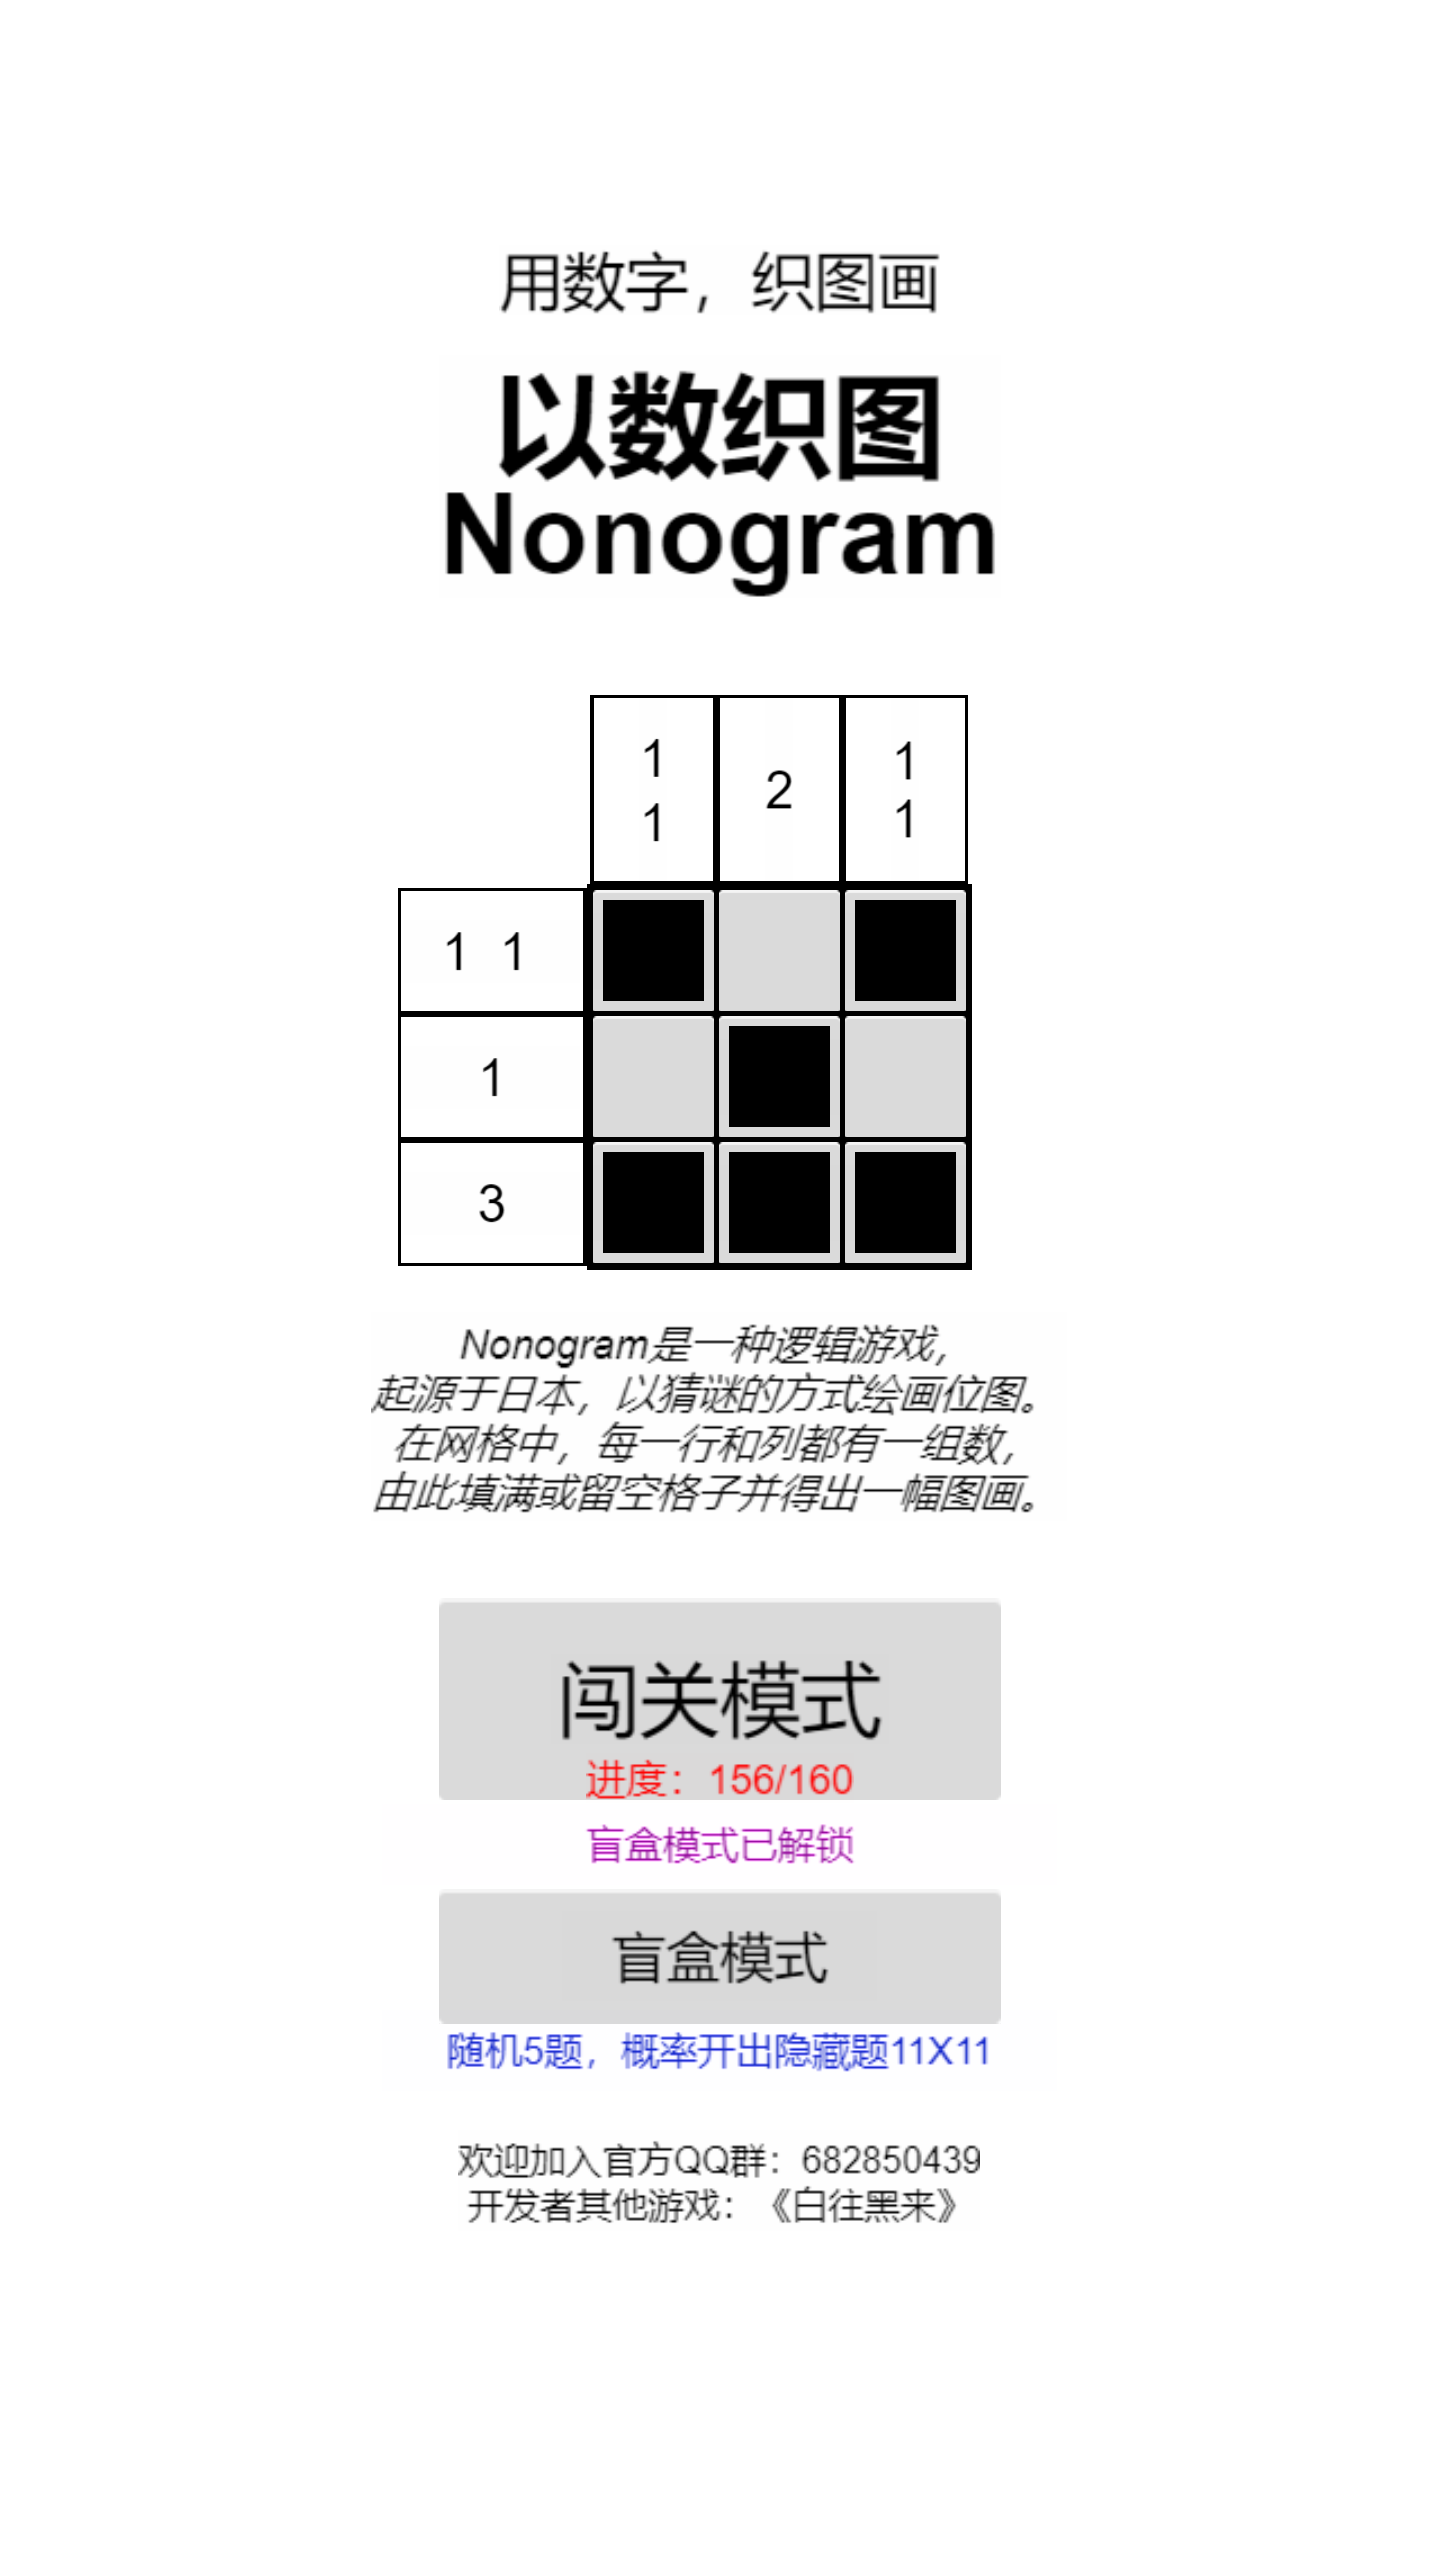 以数织图Nonogram推出盲盒模式！快来试试运气吧！